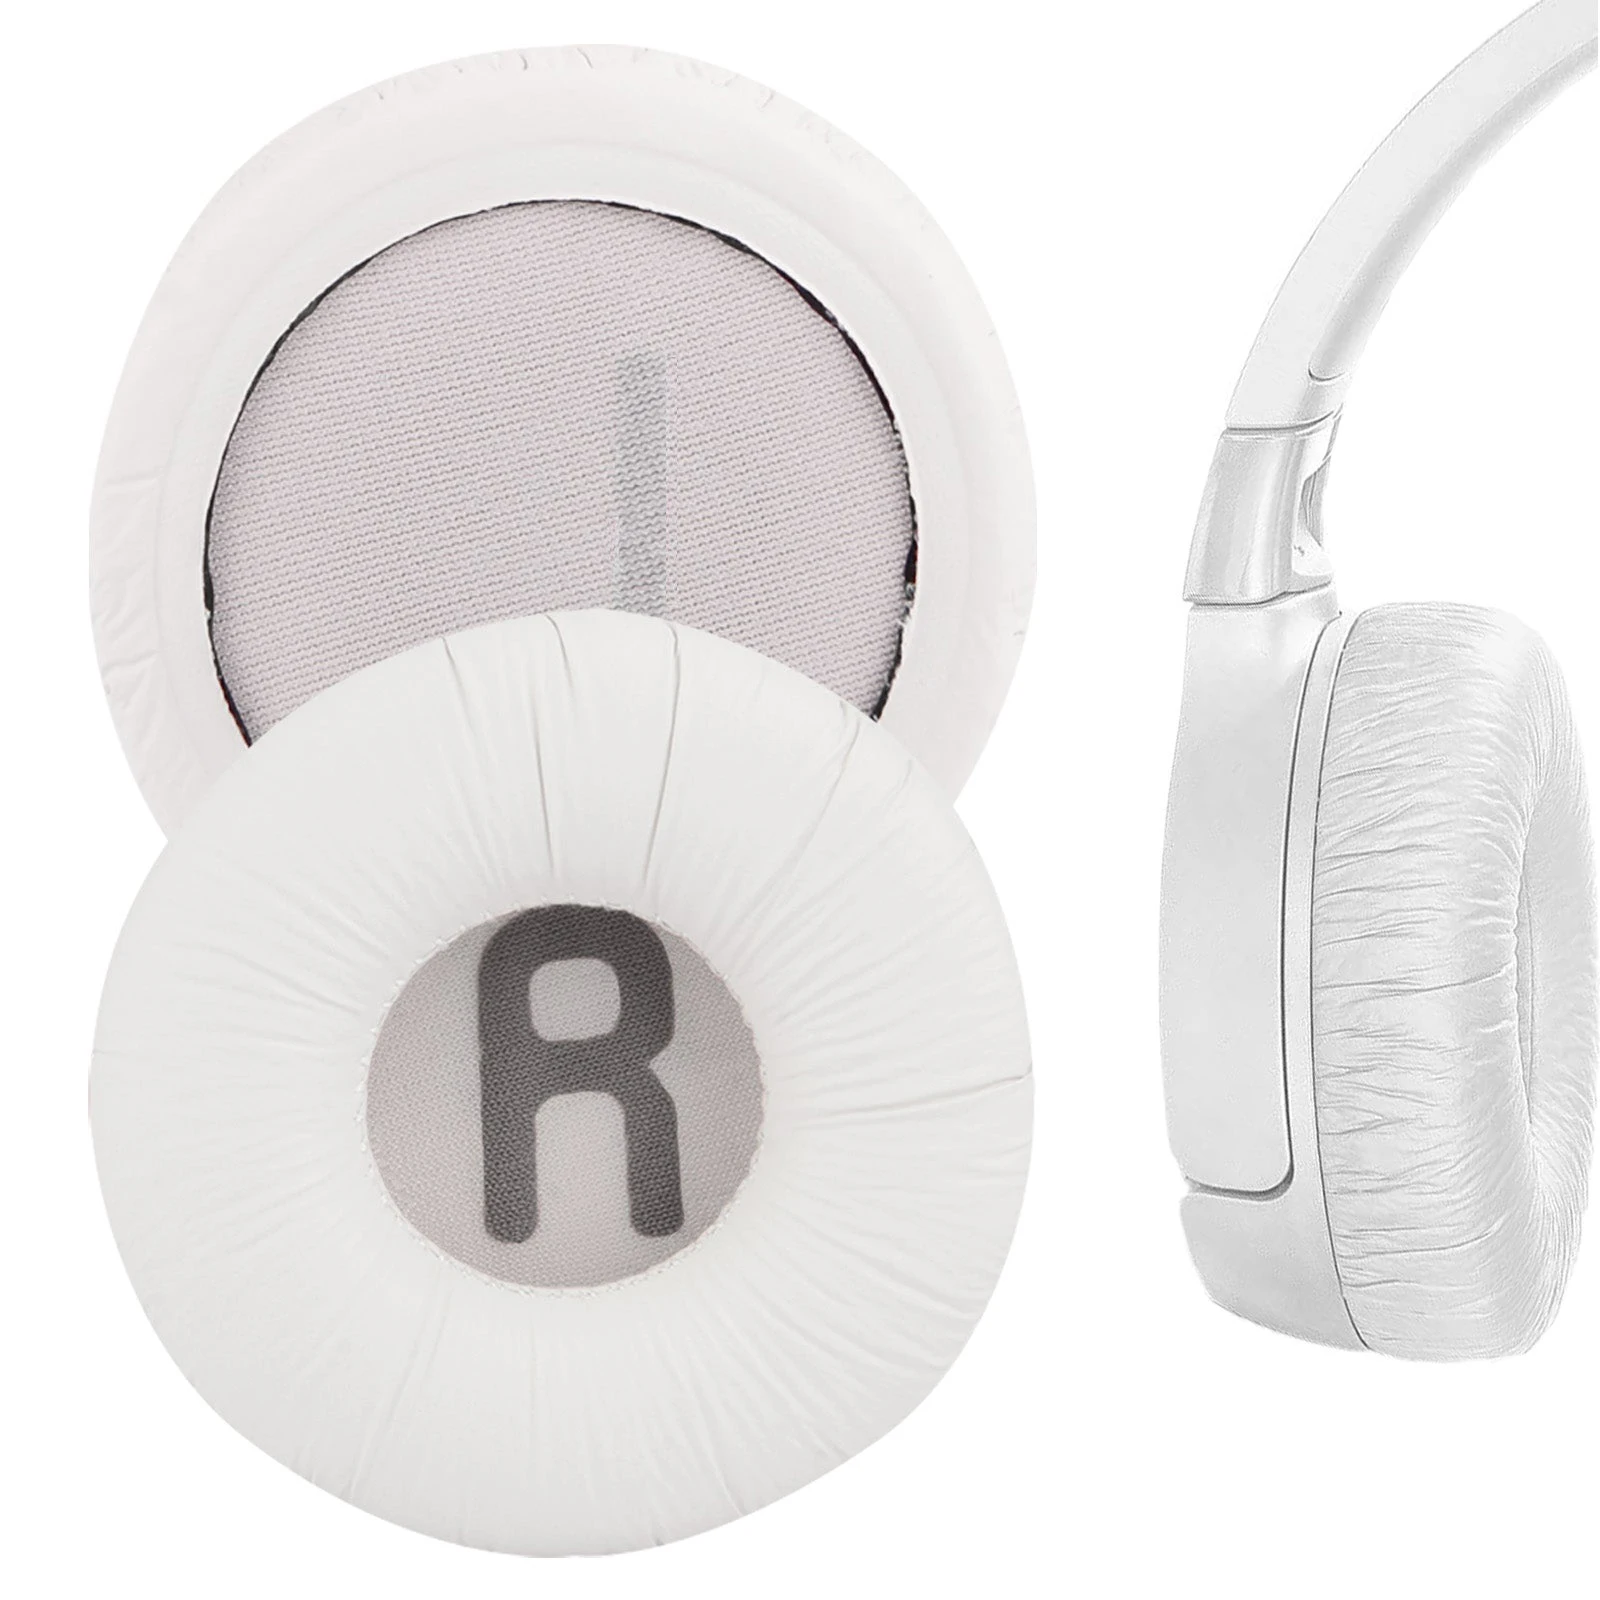 Replacement Foam Earmuffs Ear Pads Sponge earplug Pads For JBL JR300 JR300BT T450BT Tune 500 500BT 510BT T450 600BTNC Headphones